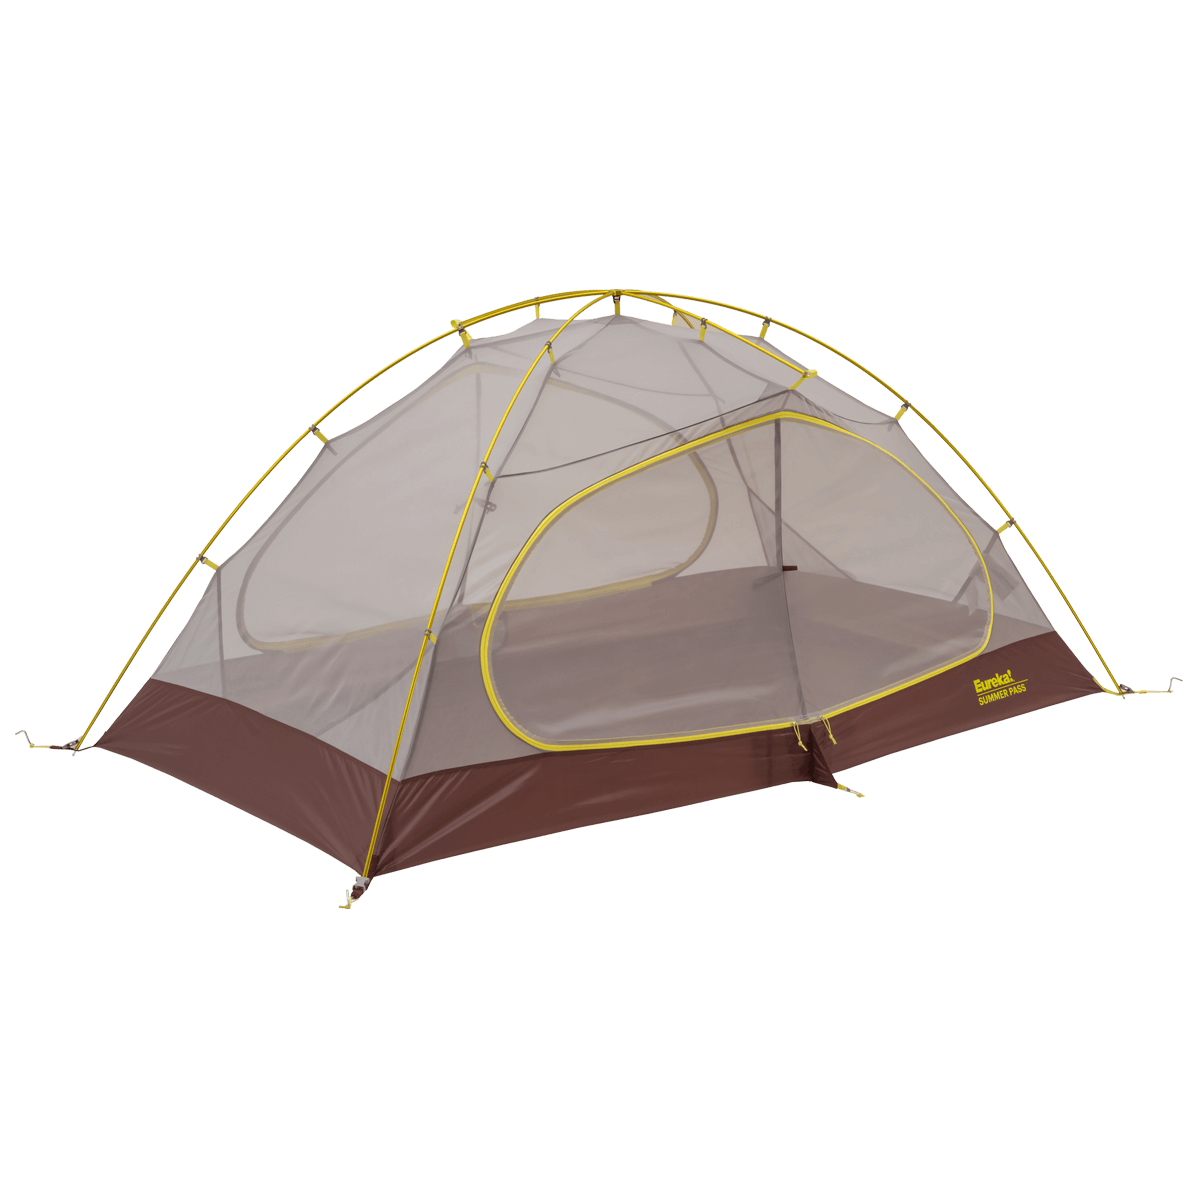 Eureka Summer Pass Tent